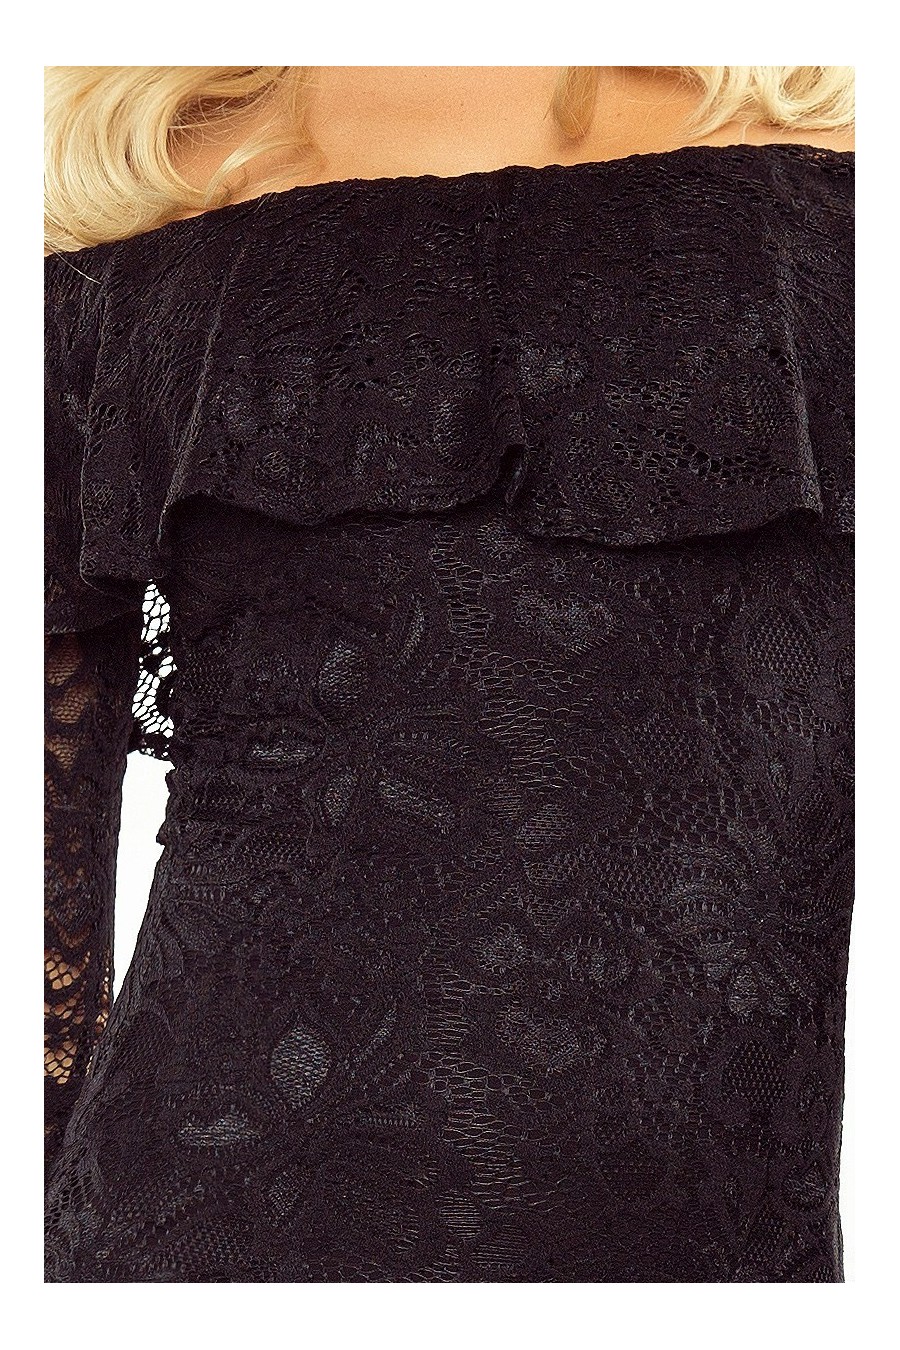 MM 021-1 Šaty s límcem - krajka - cerná